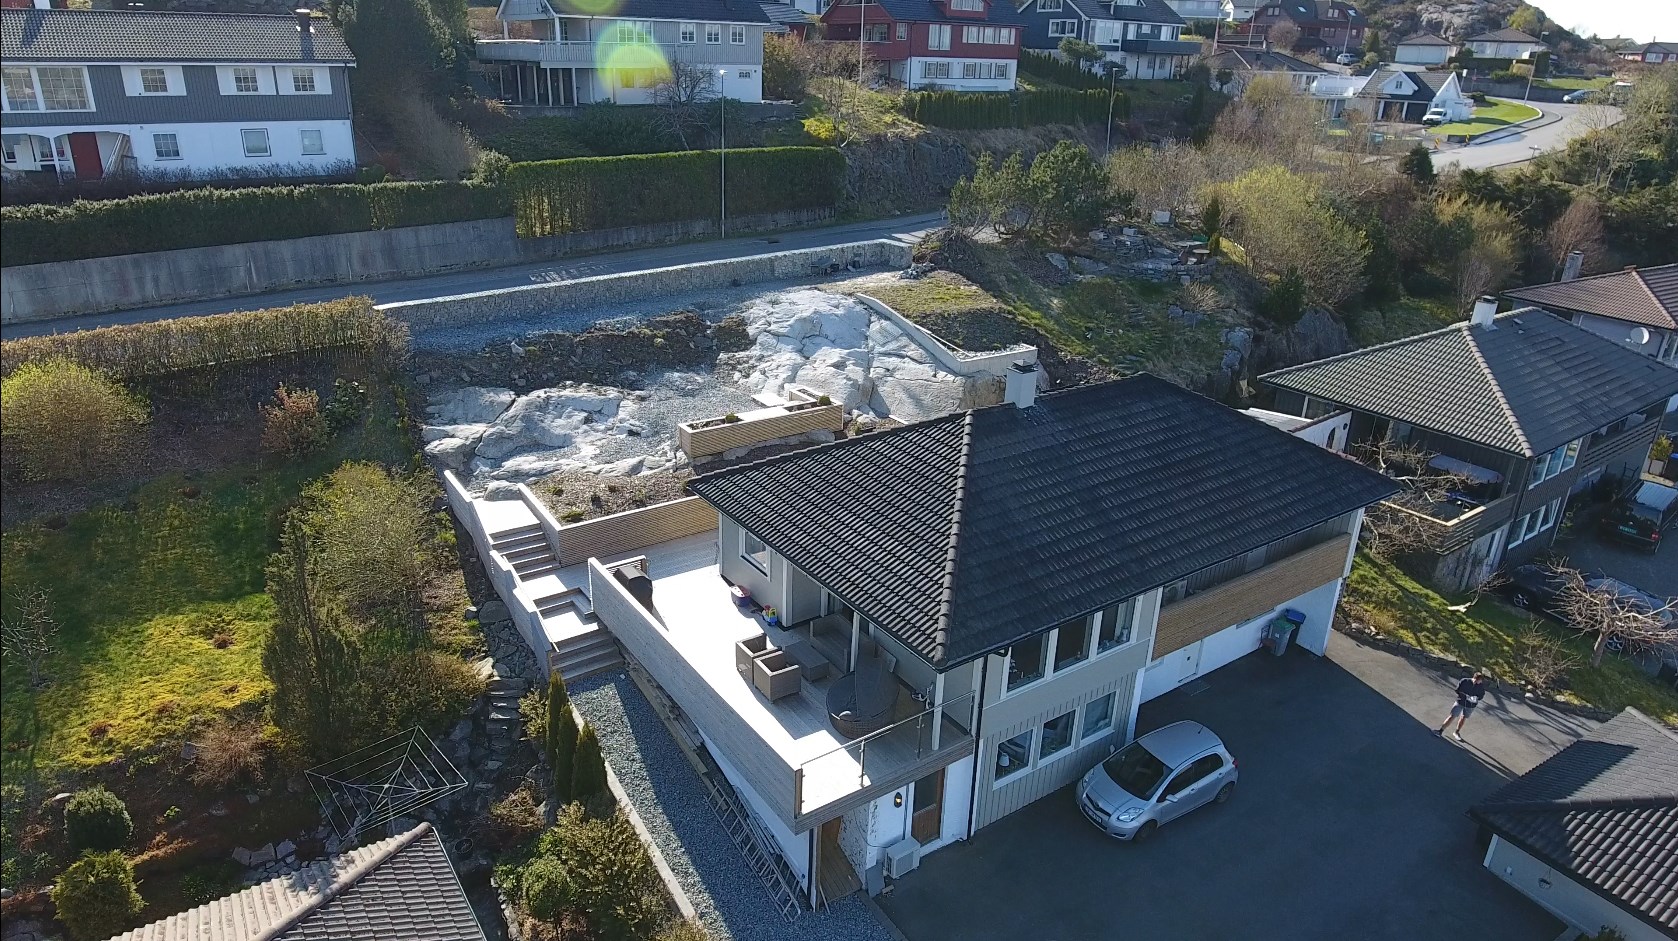 Prosjekt hage 2015-2016, terrasse, platting, hageflekk - 200-300m2 -  - Tremblerino